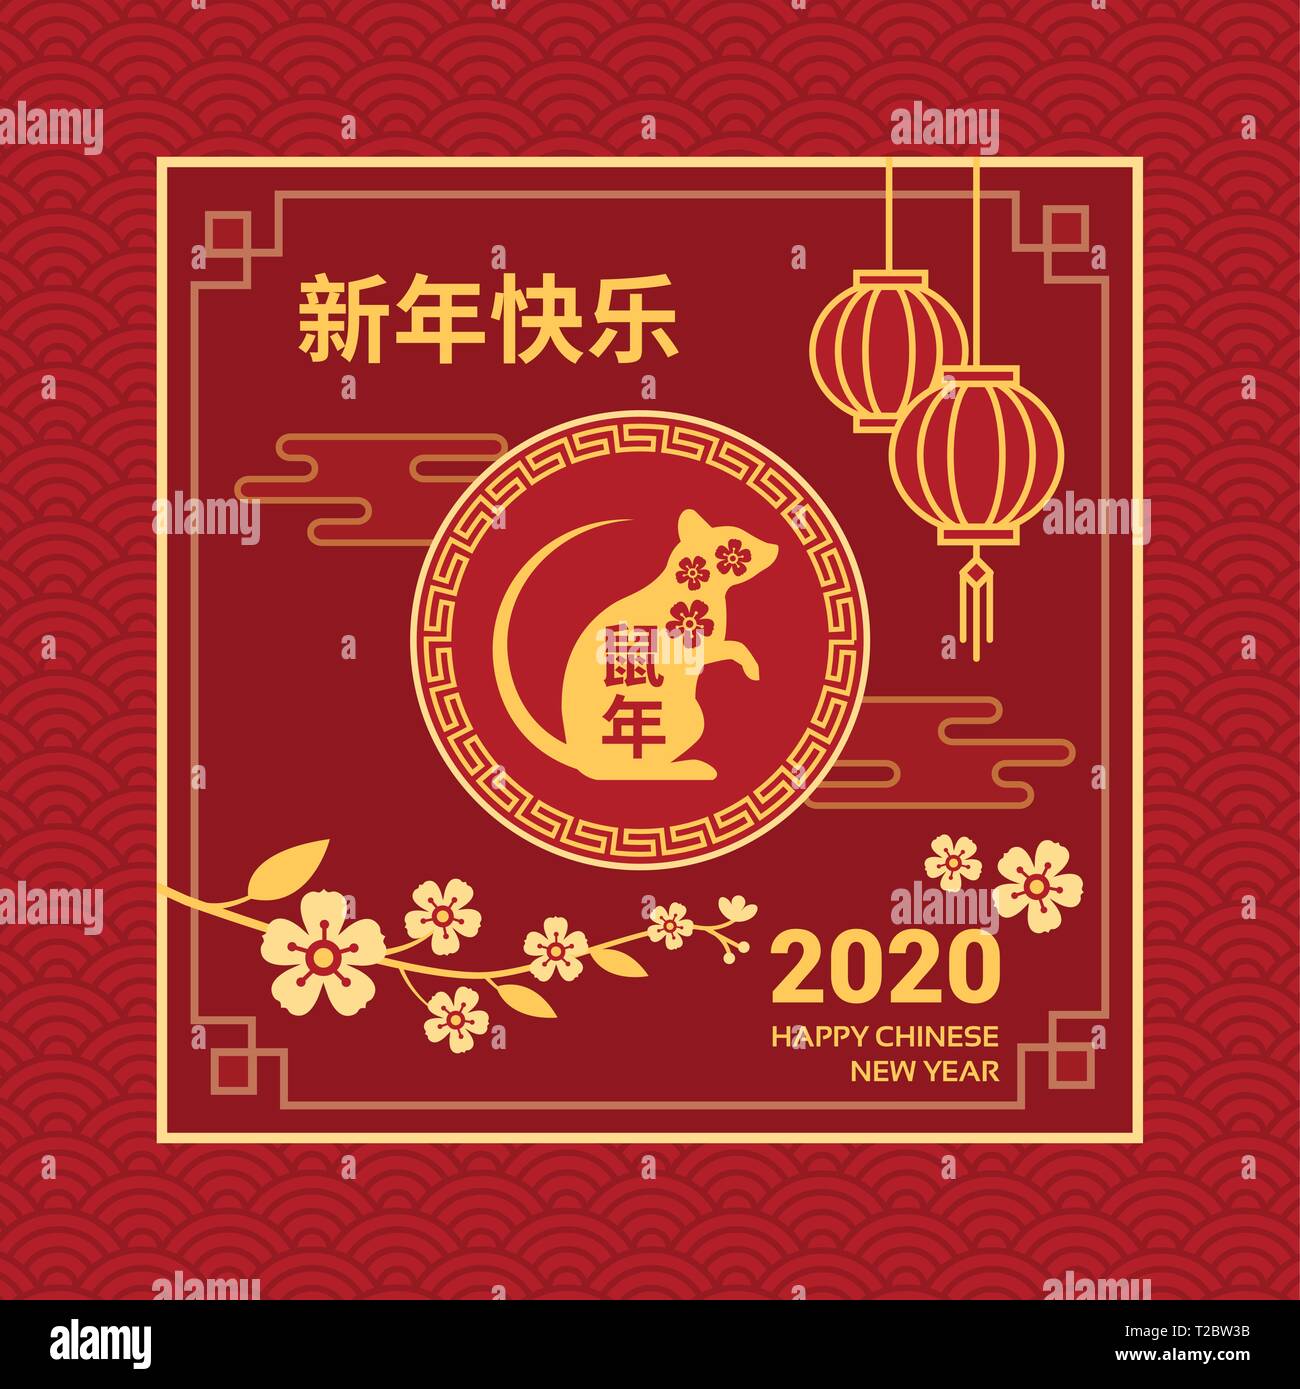 Happy Chinese New Year Karte und social media Post mit Ratte, blühen Blumen und roten Laternen Stock Vektor